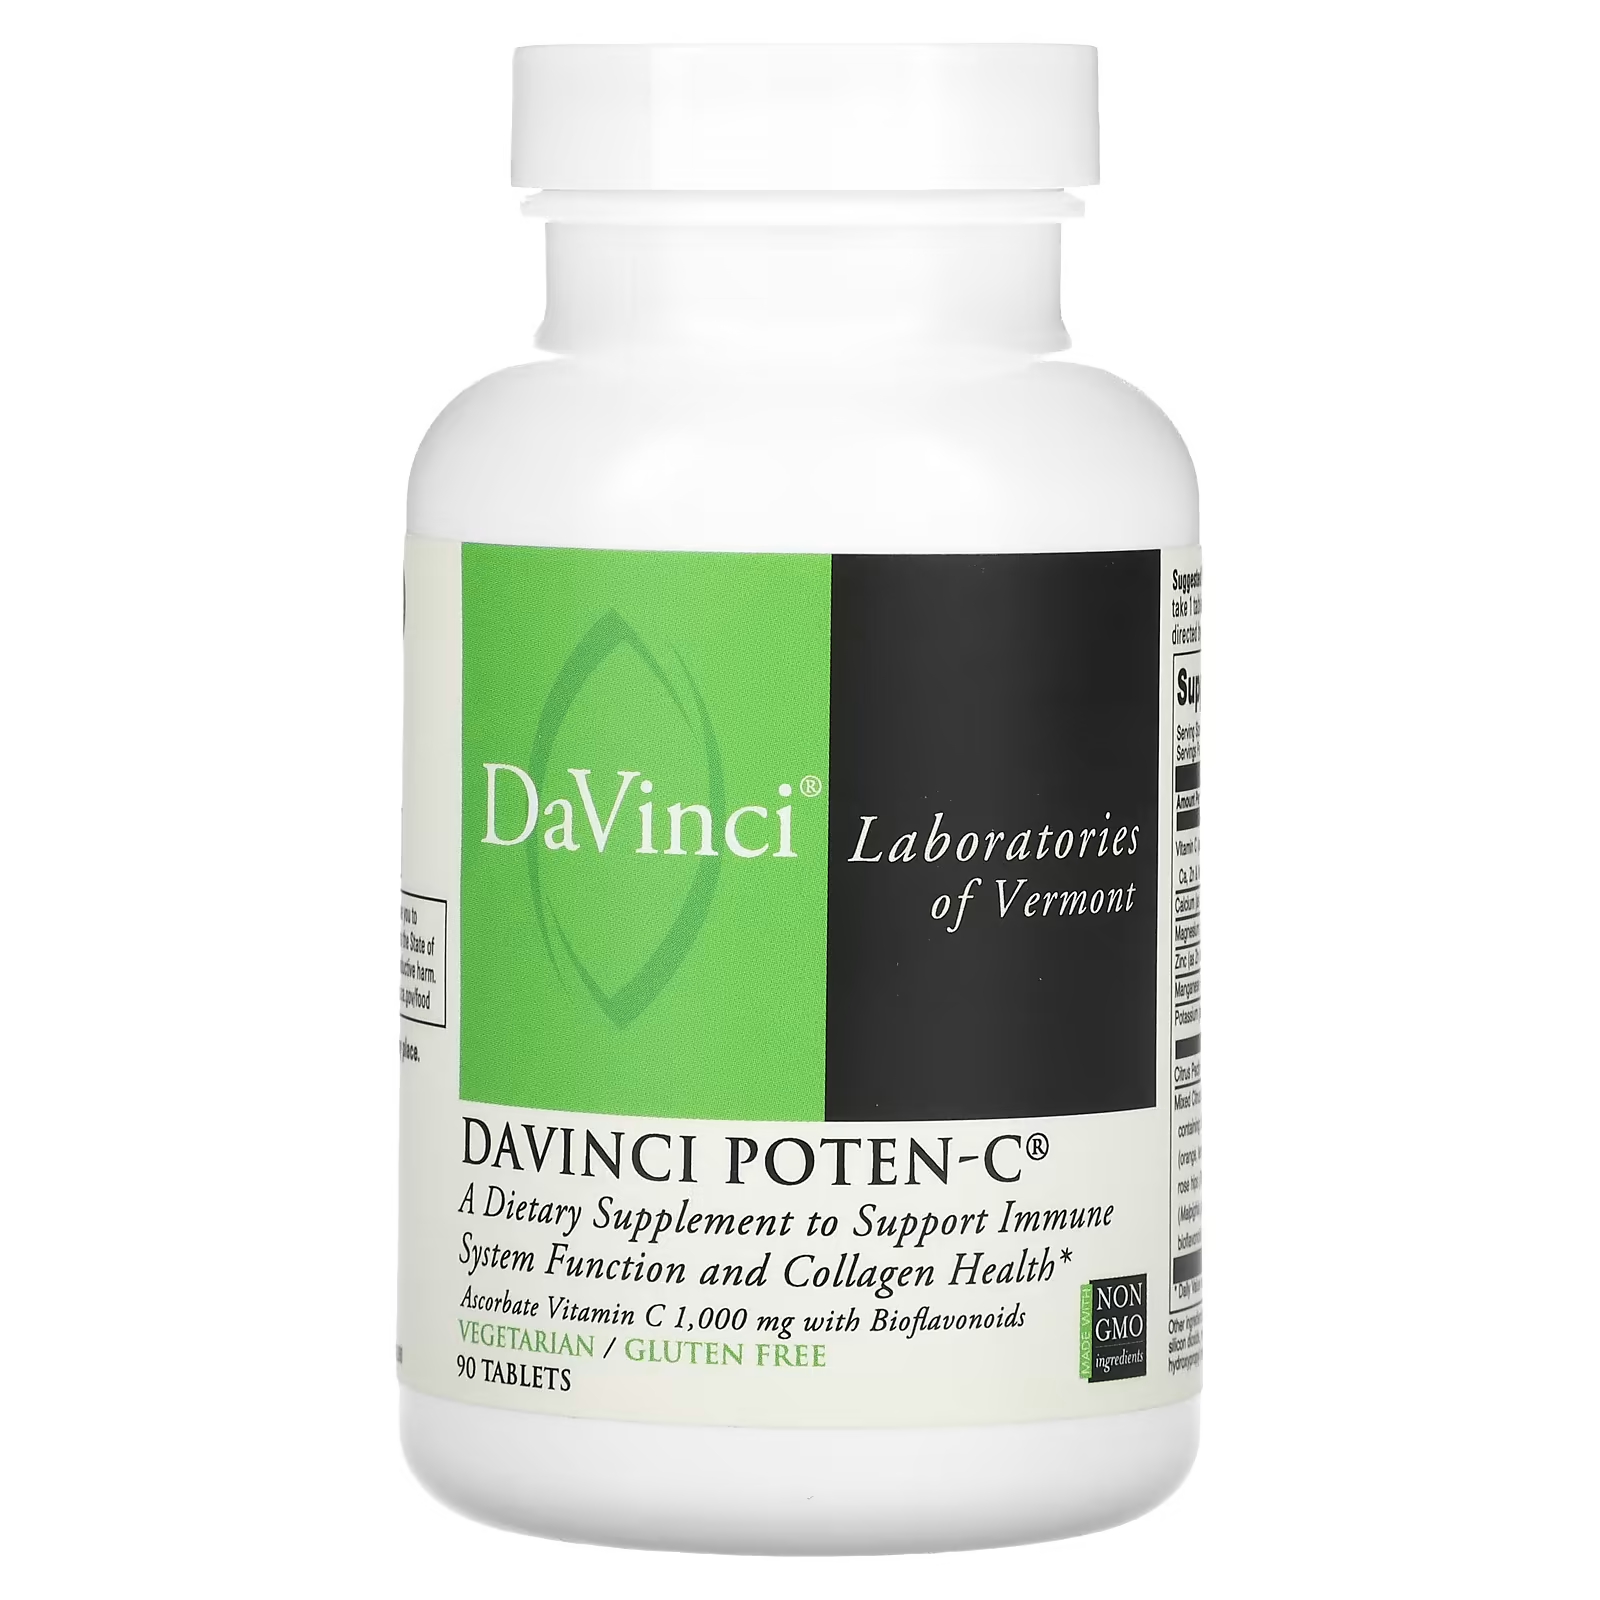 Пищевая добавка DaVinci Laboratories of Vermont Davinci Poten-C, 90 таблеток